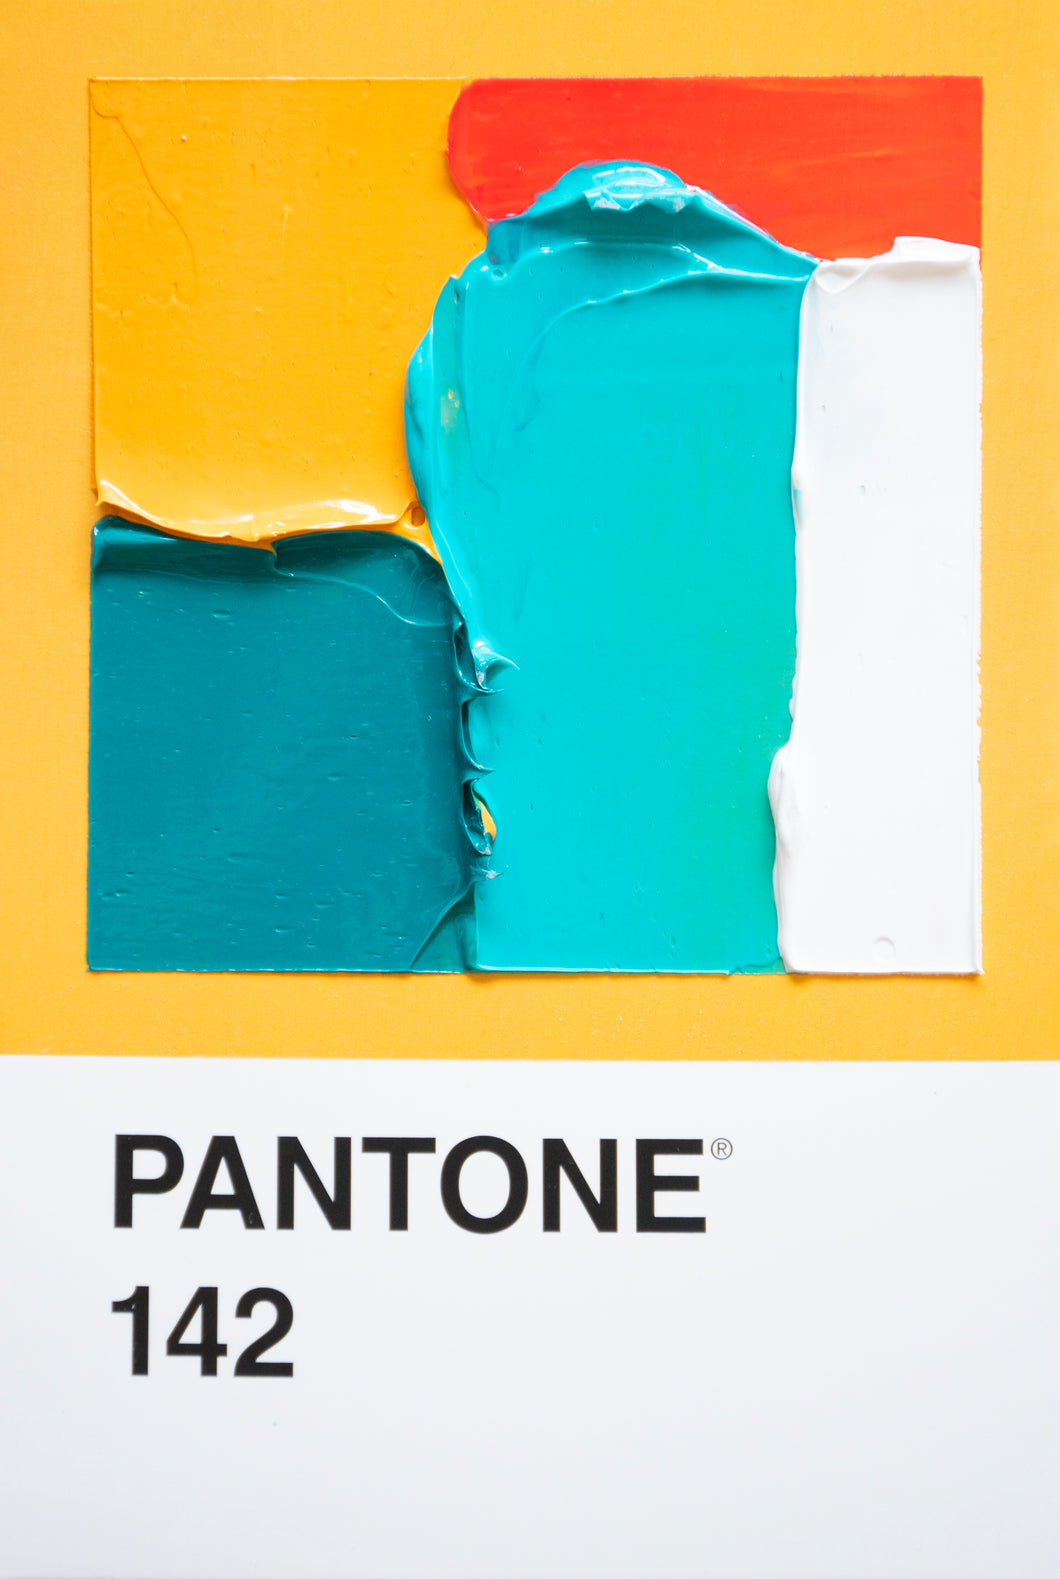 Pantone 142